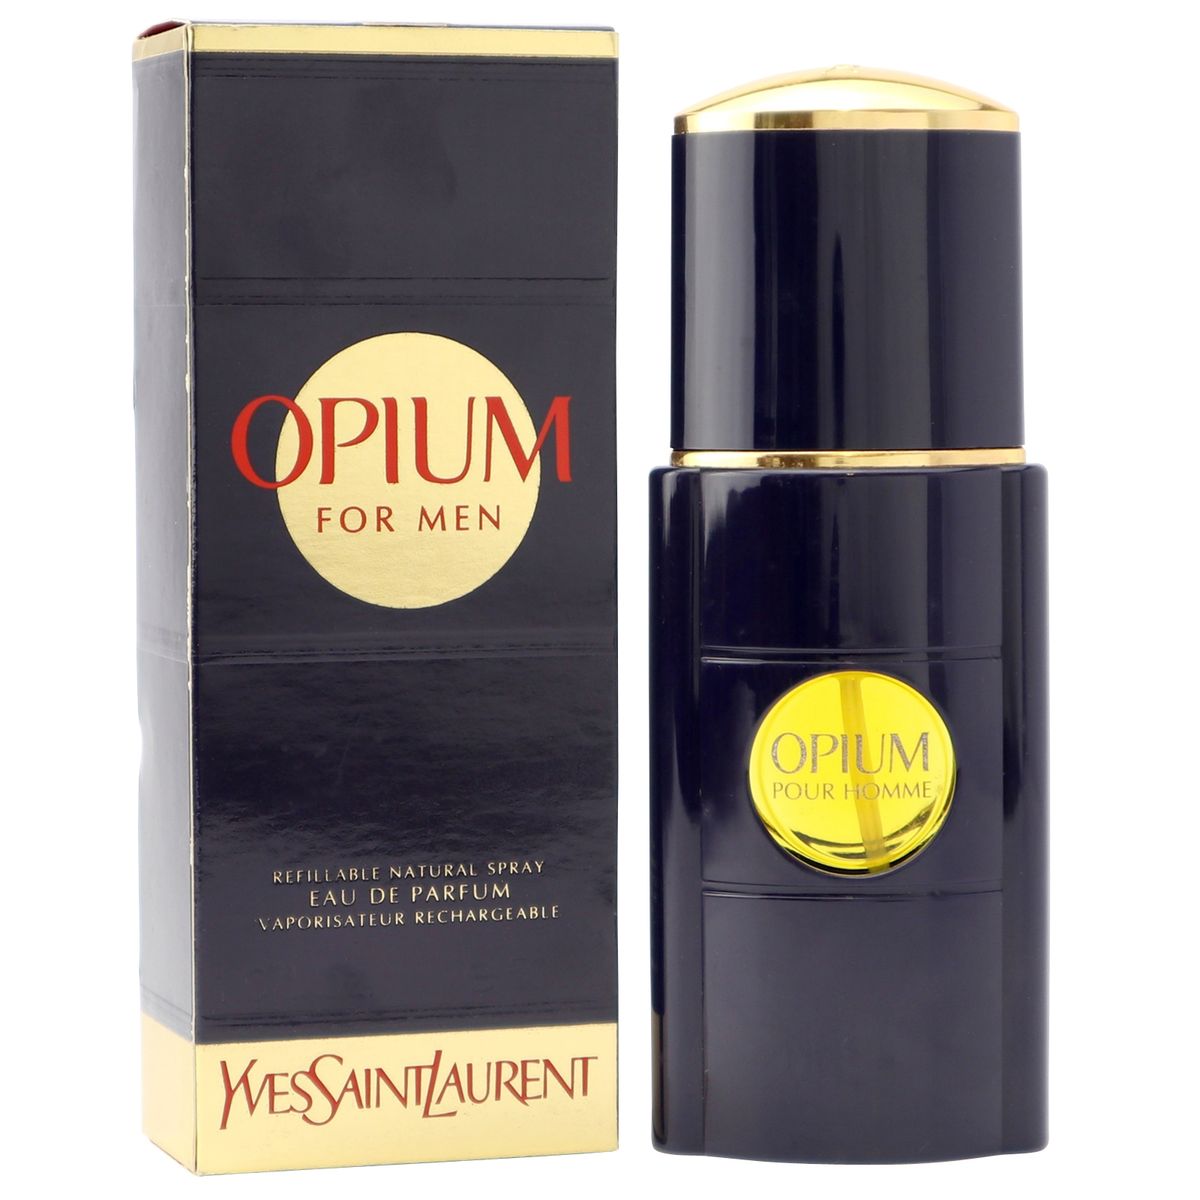 Opium pour homme. Yves Saint Laurent Opium Eau d`Orient Limited Edition. Исл опиум pour homme. Opium Pure. Opium Karti.